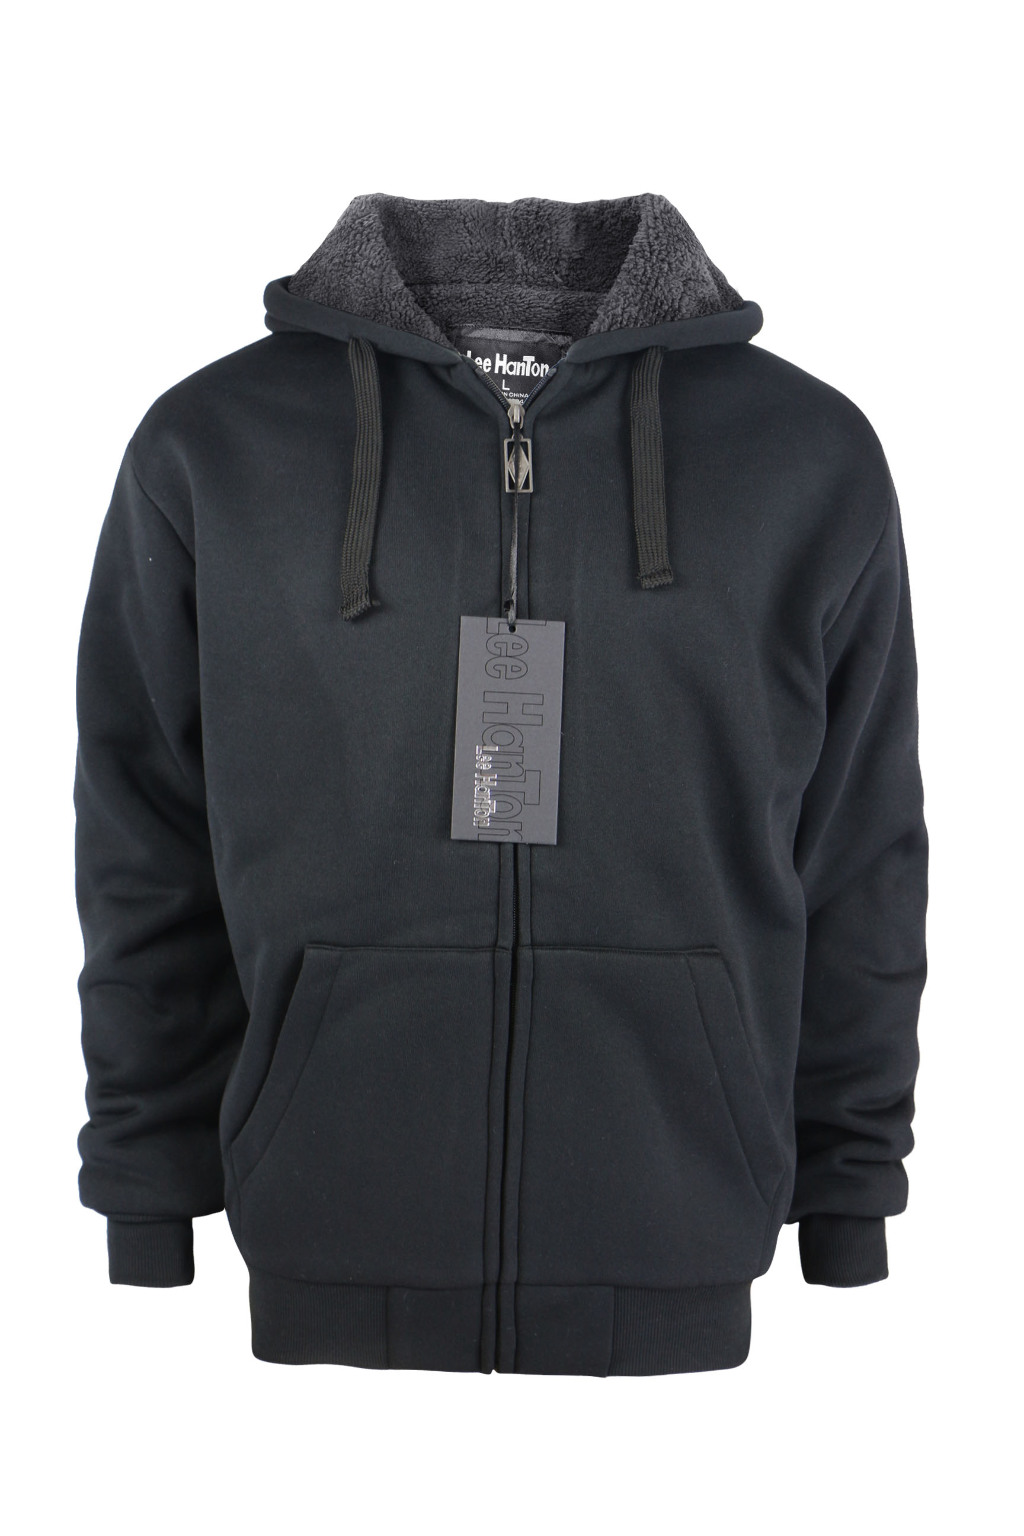 Wholesale Men's Sherpa Lined Full-Zip Hoodie Jacket -Black (SKU 2351285 ...